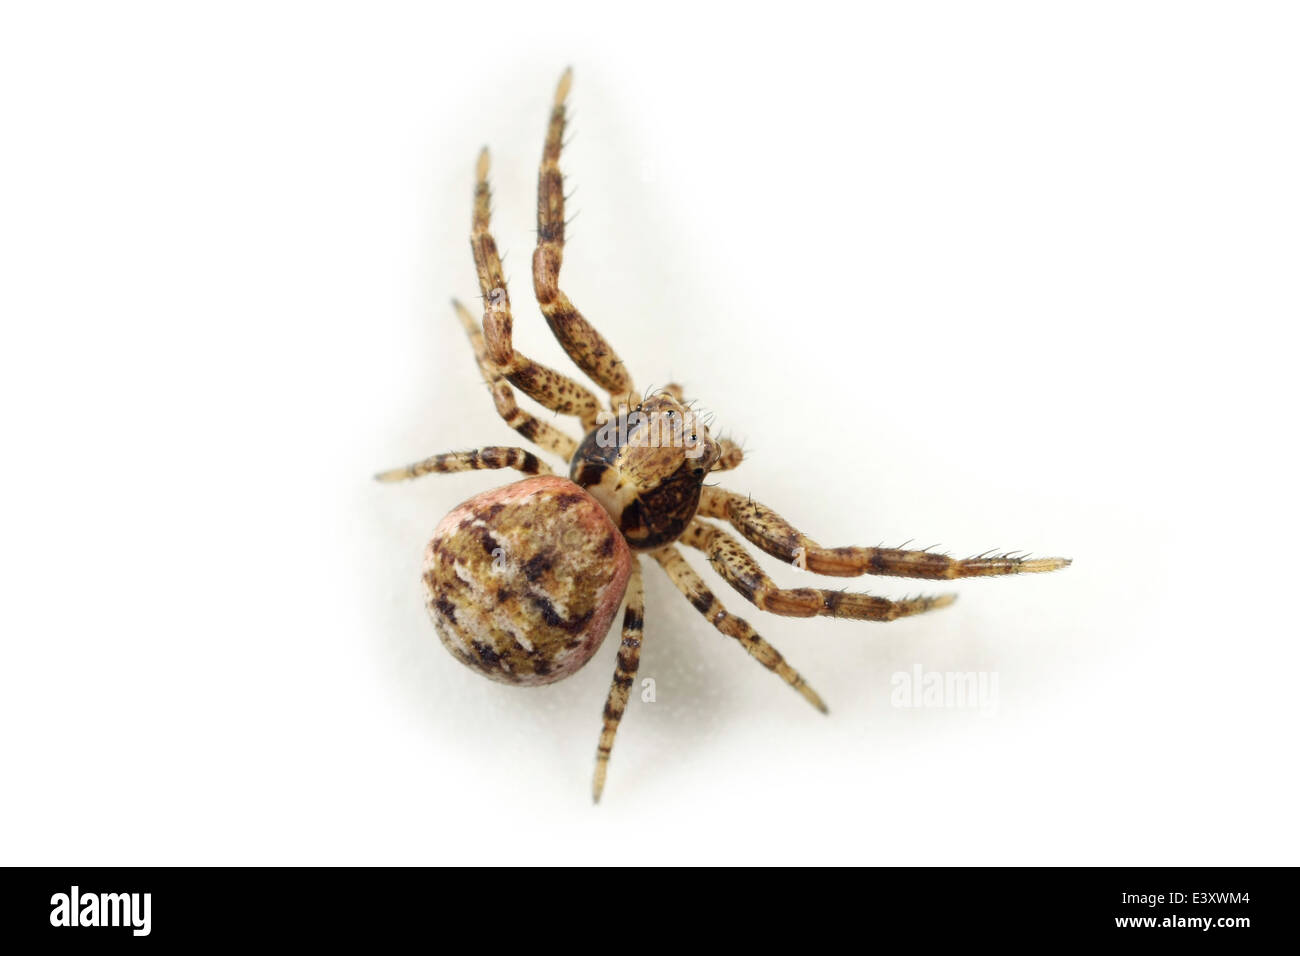 Weibliche Xysticus Audax Spinne, Teil der Familie Thomisidae - Krabben Spinnen. Isoliert auf weißem Hintergrund. Stockfoto